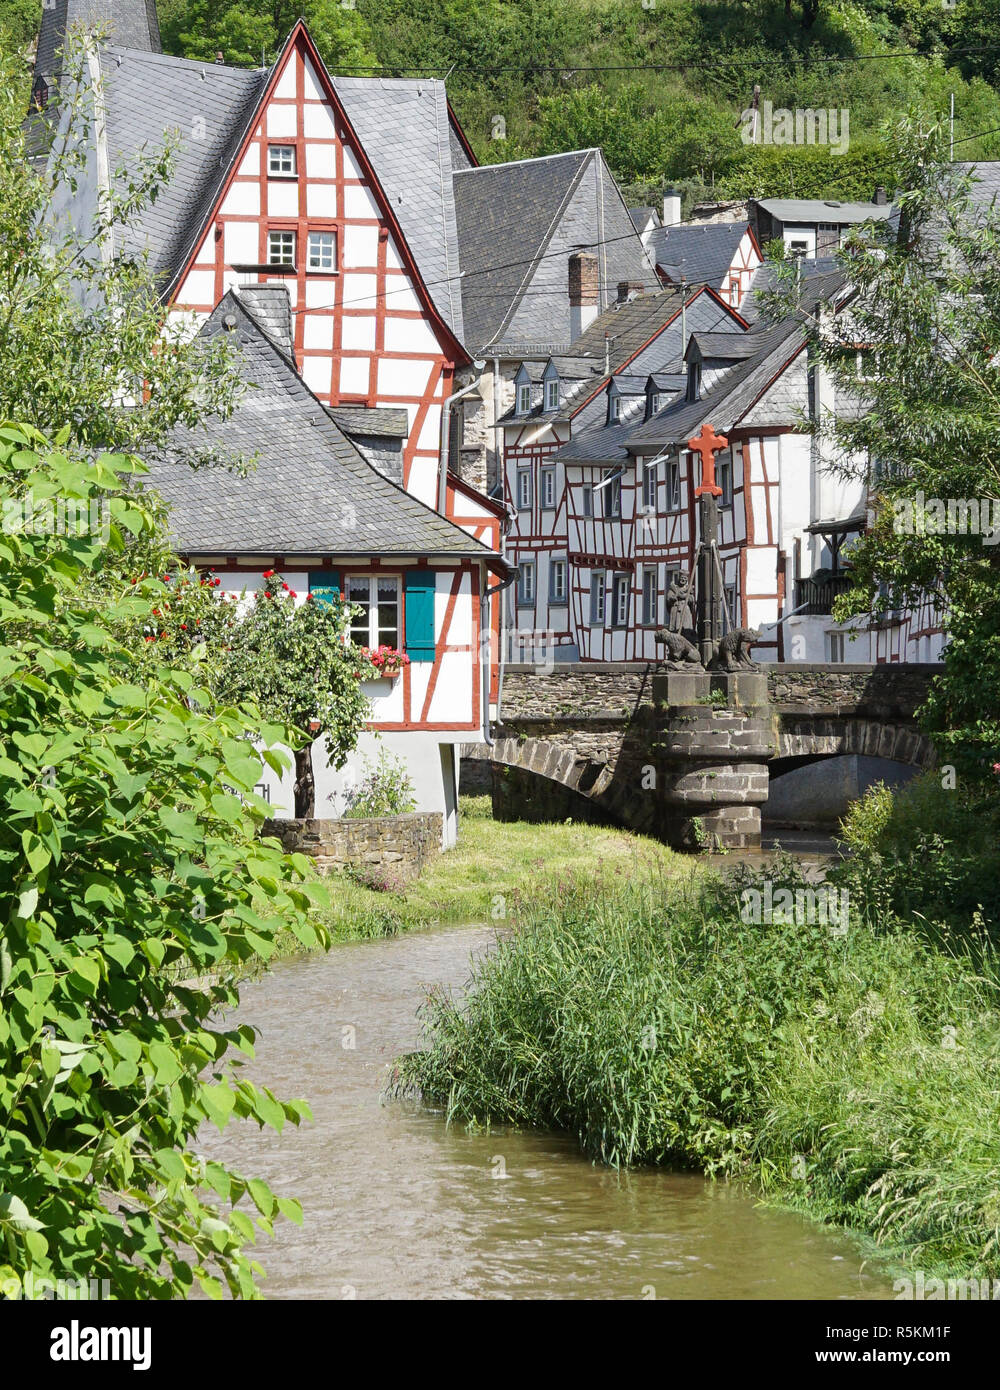 Traditionelle FachwerkhÃ¤user in Monreal, Eifel, Deutschland Stock Photo